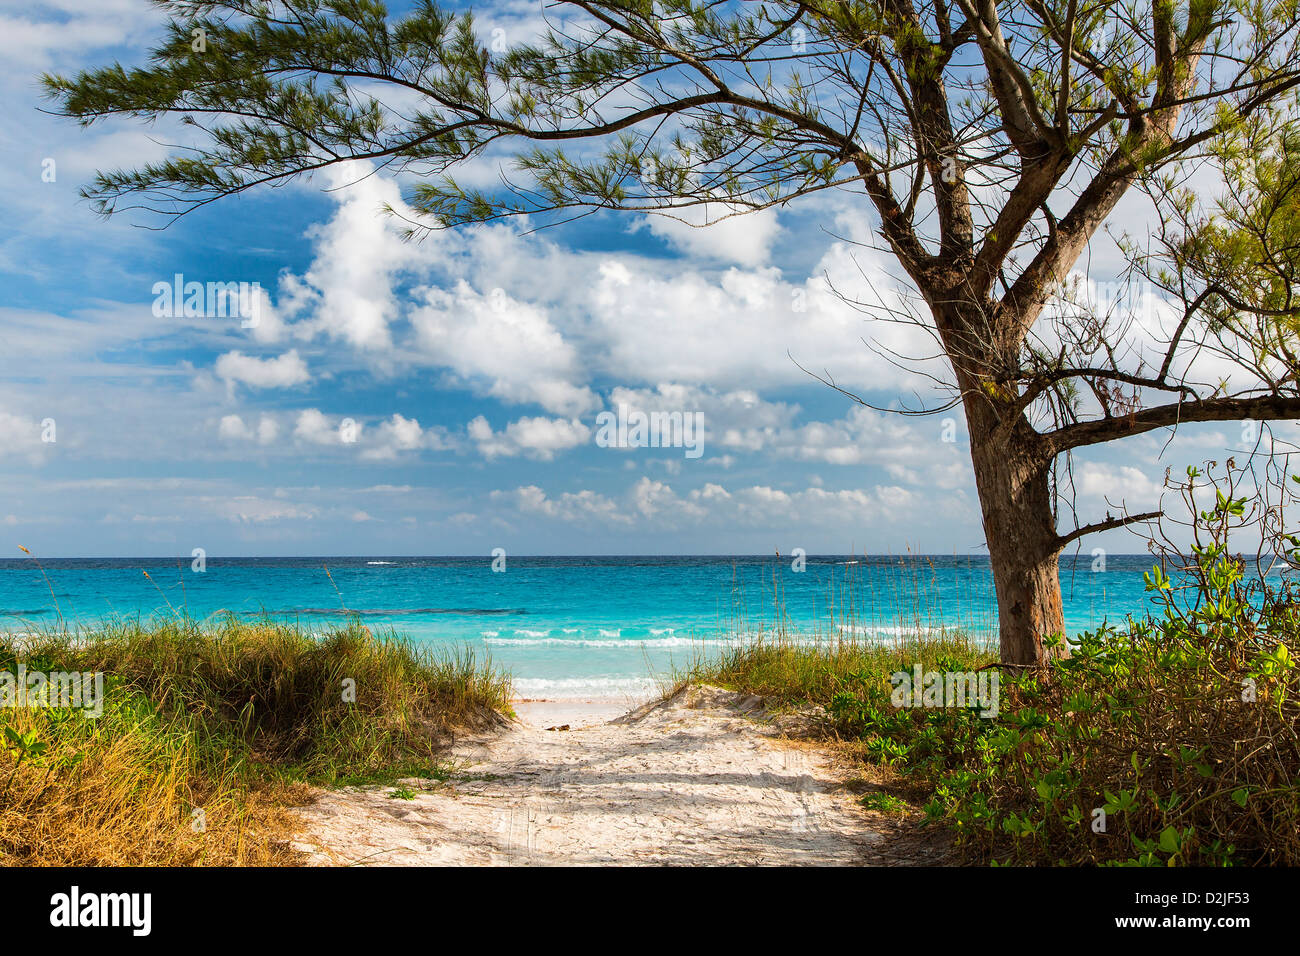 Bahamas, Eleuthera Island, Club Med Beach Stock Photo